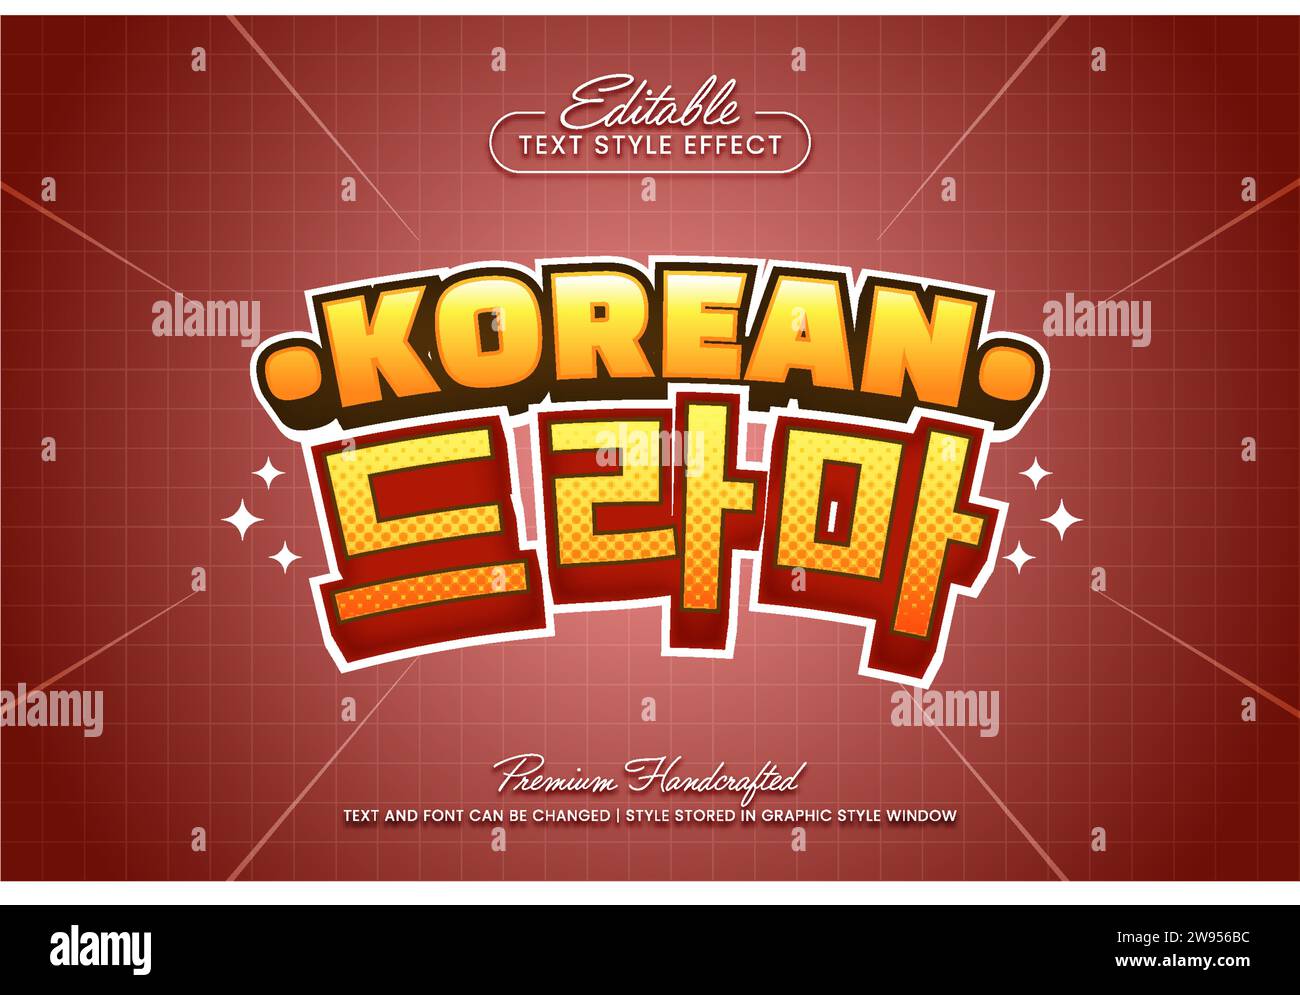 Effet de style de texte vectoriel 3D de titre coréen éditable, adapté à la création de graphiques texte accrocheurs pour les médias numériques et imprimés tels que les affiches, la société Illustration de Vecteur